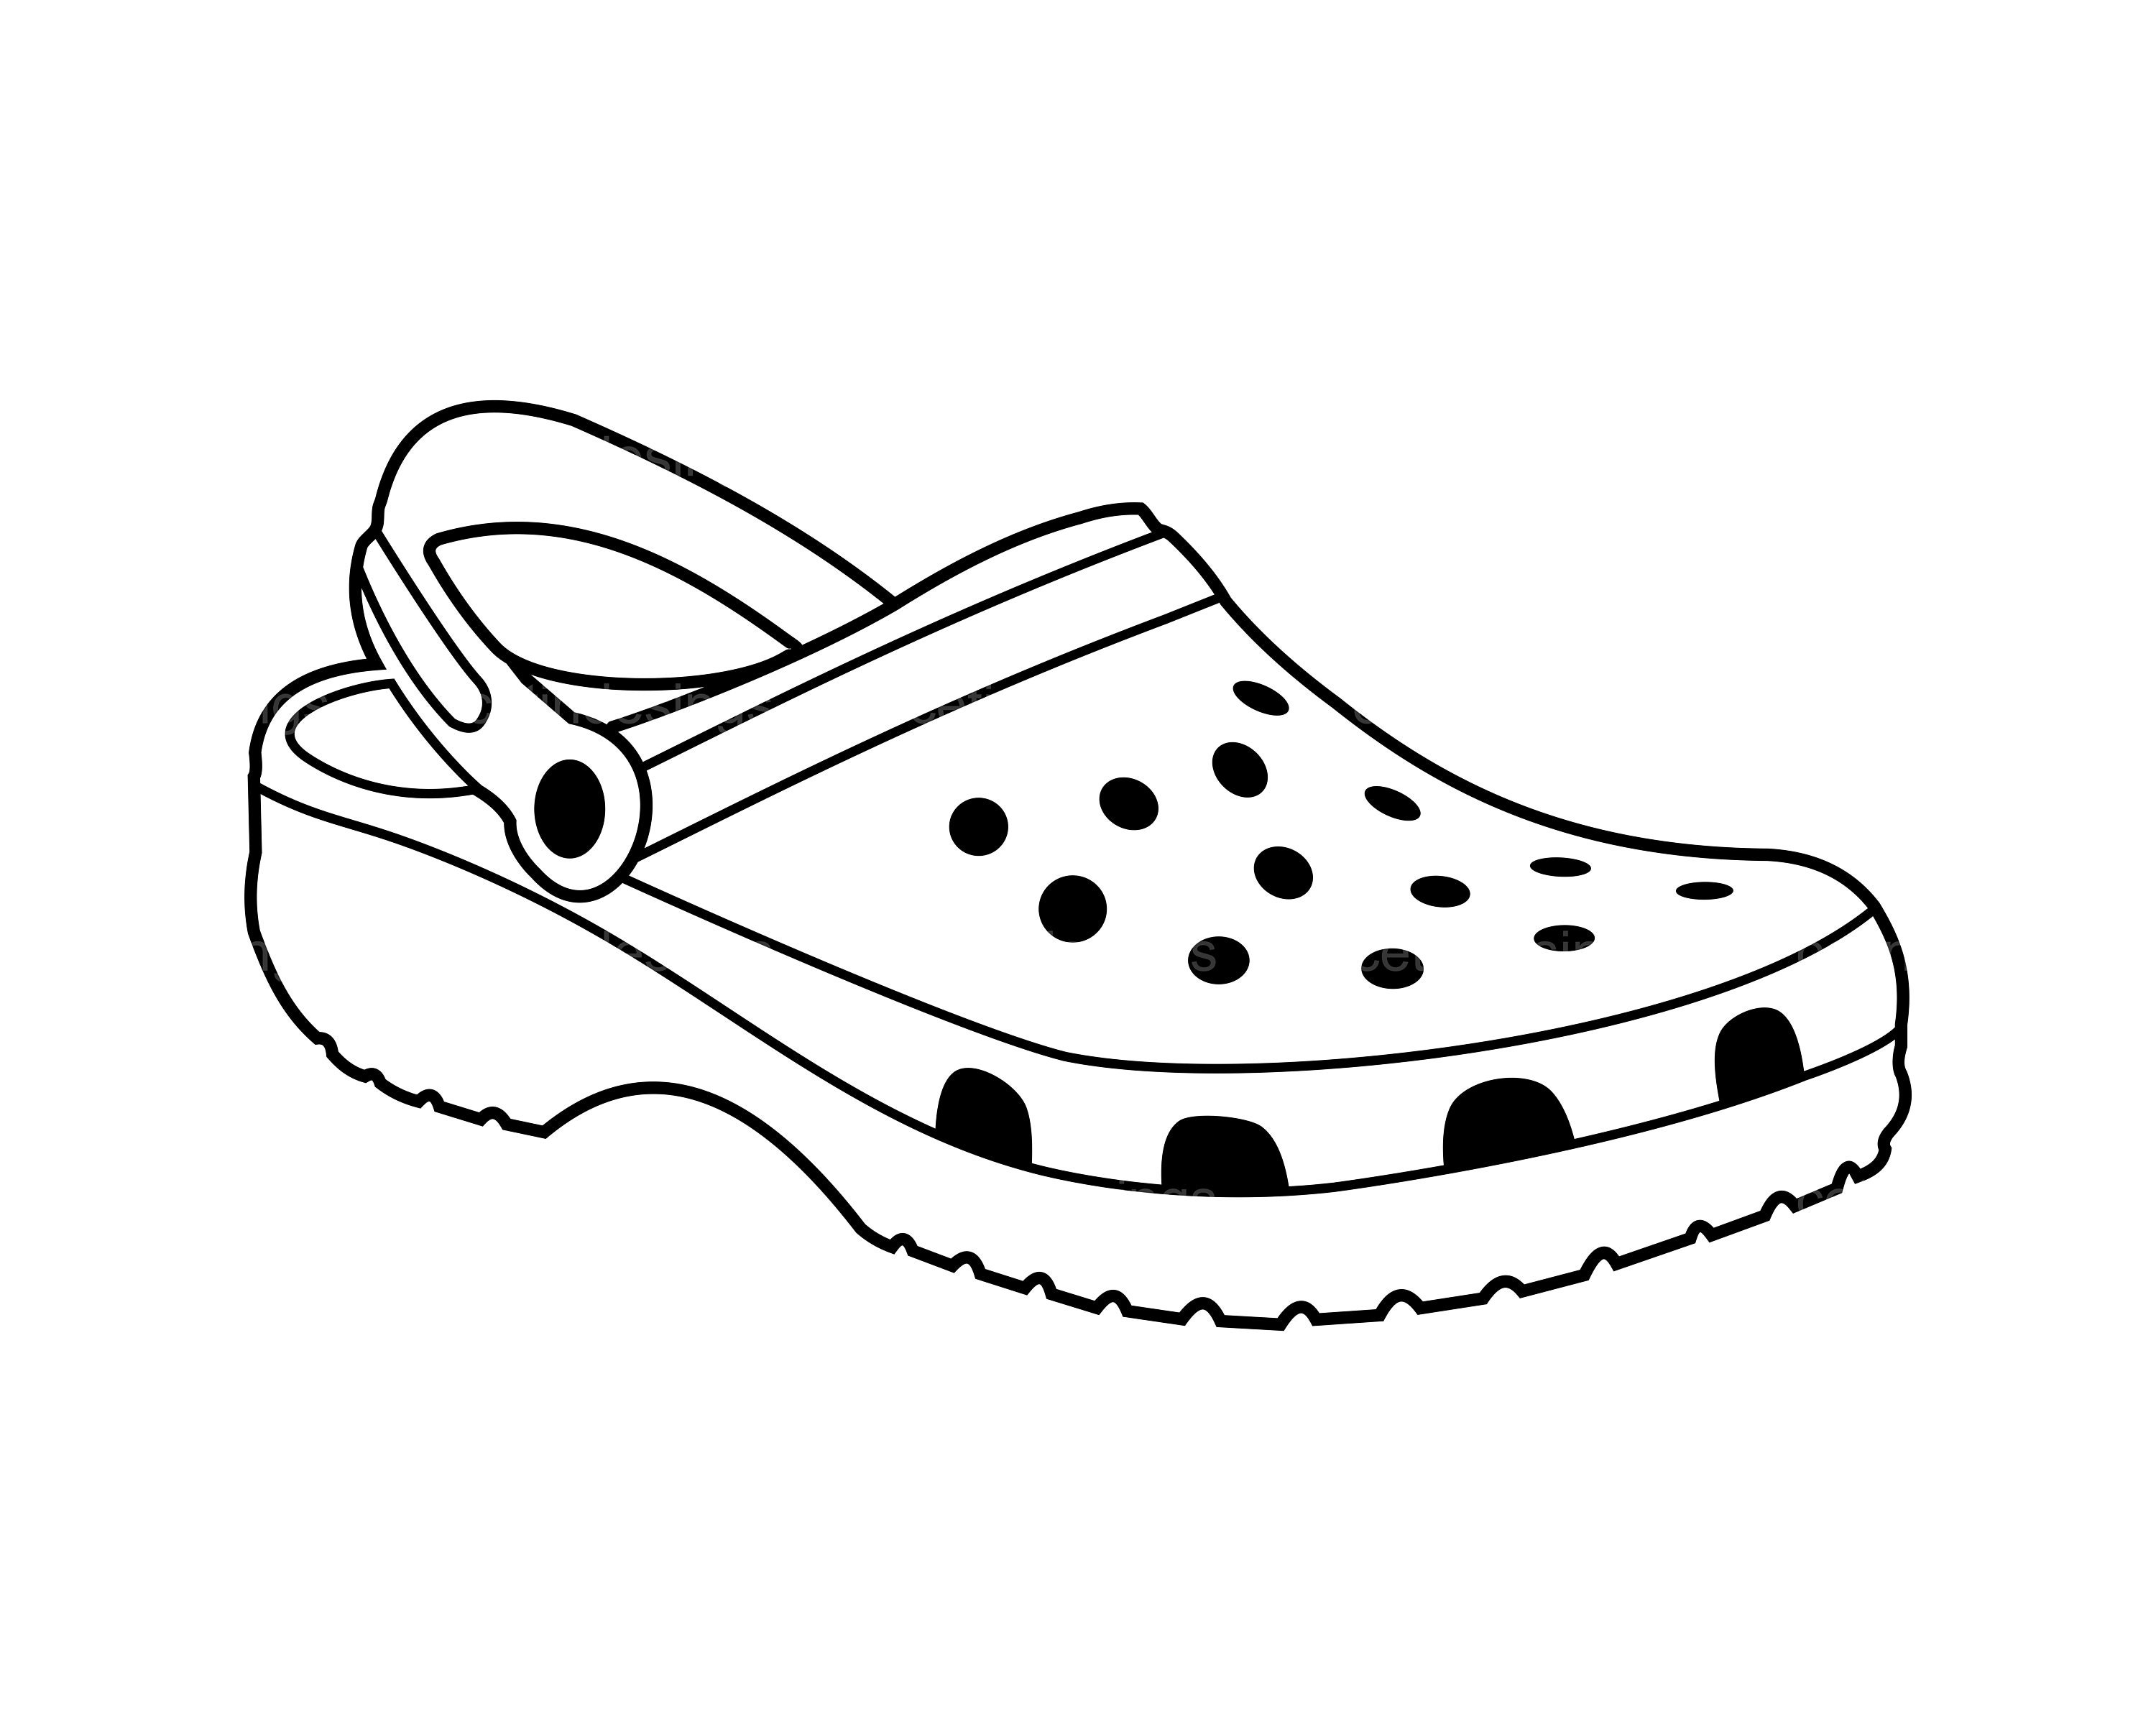 Croc Shoe Svg Croc Shoe Png Croc Shoe Clipart Croc Shoe - Etsy